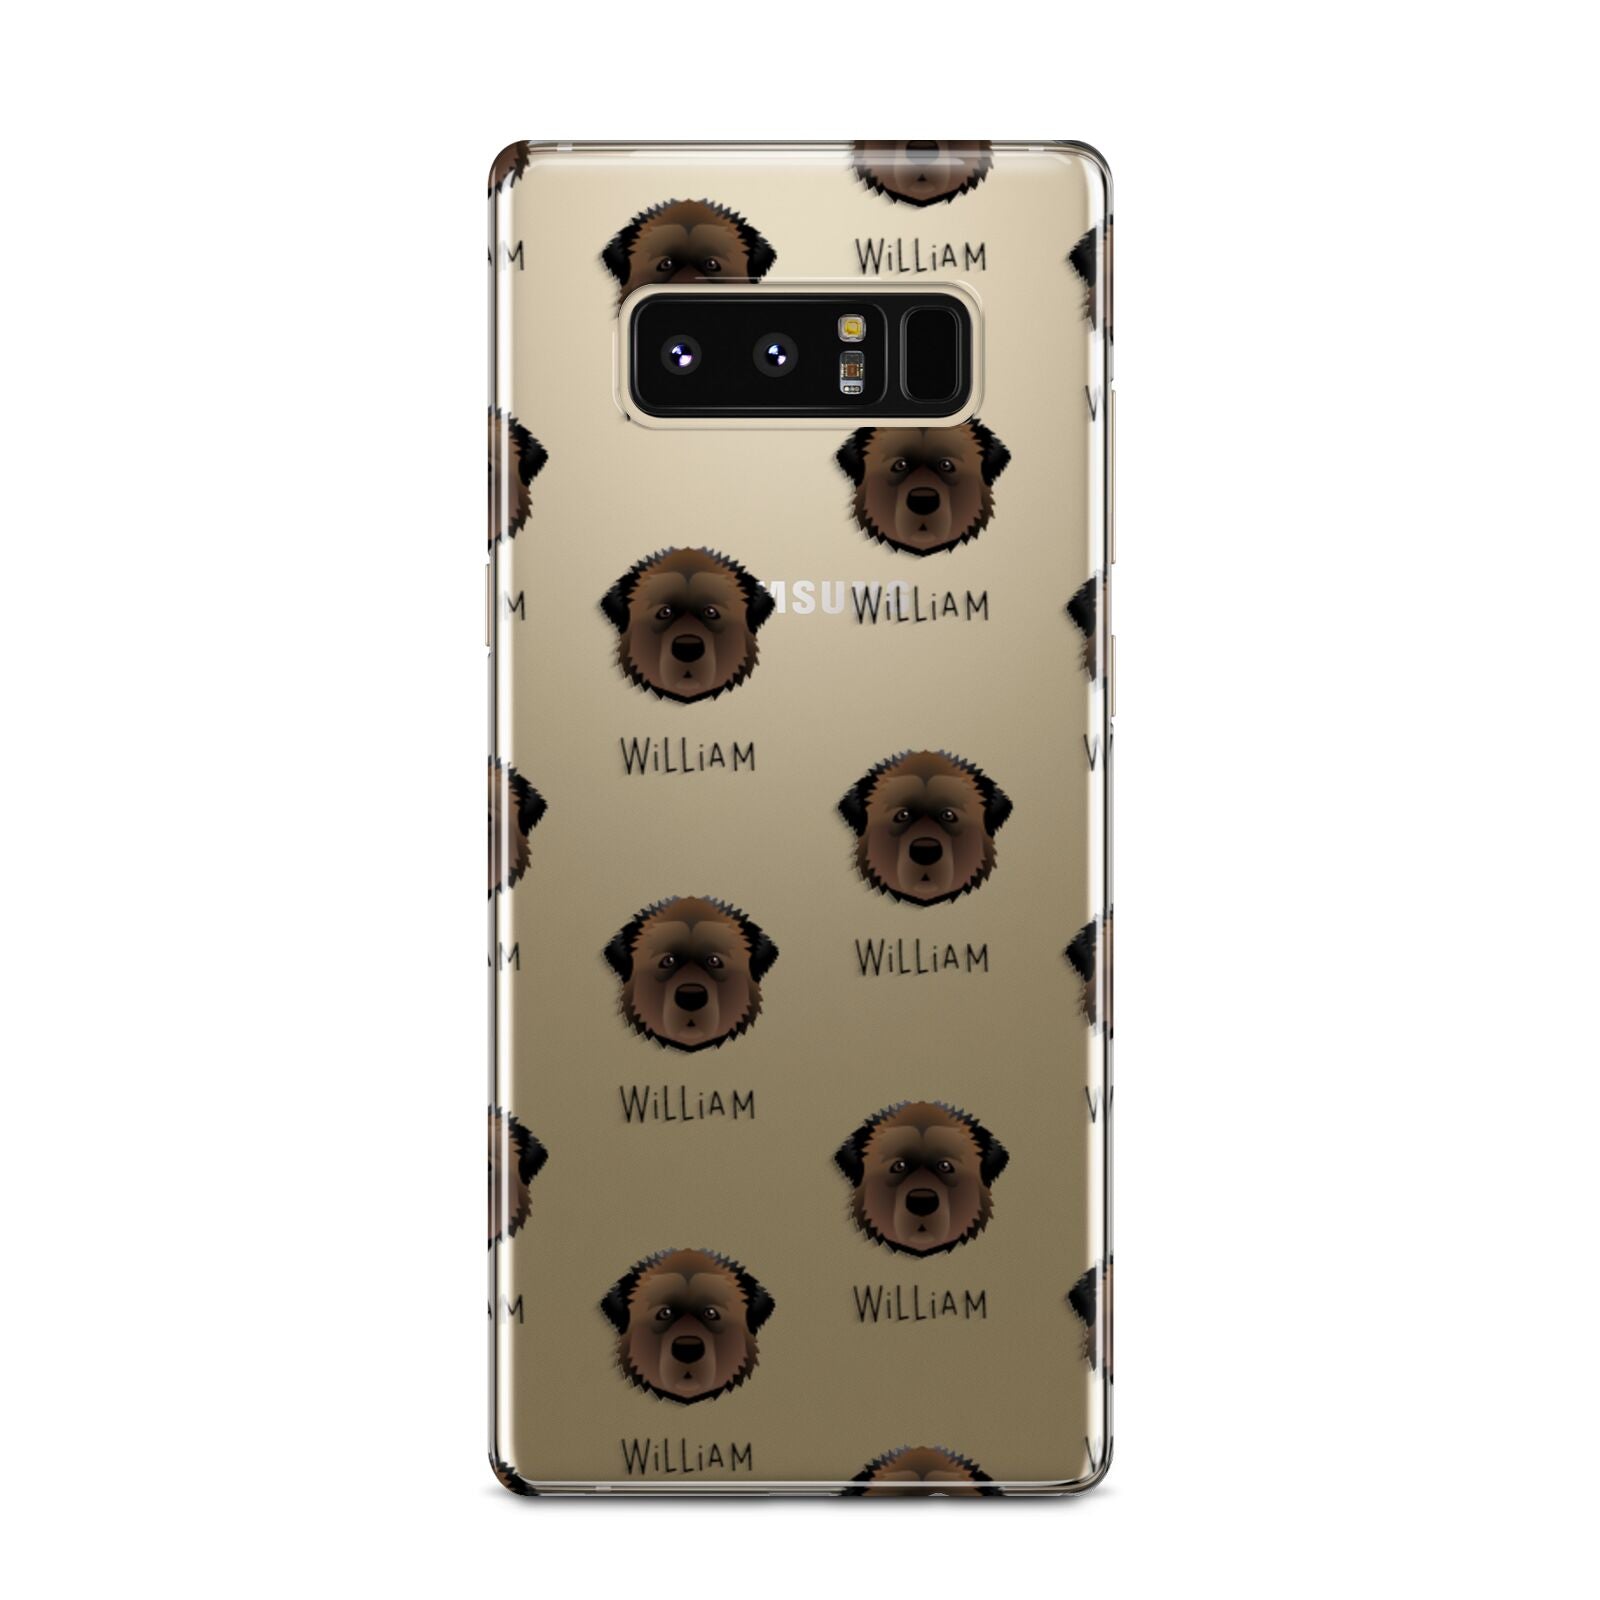 Estrela Mountain Dog Icon with Name Samsung Galaxy Note 8 Case